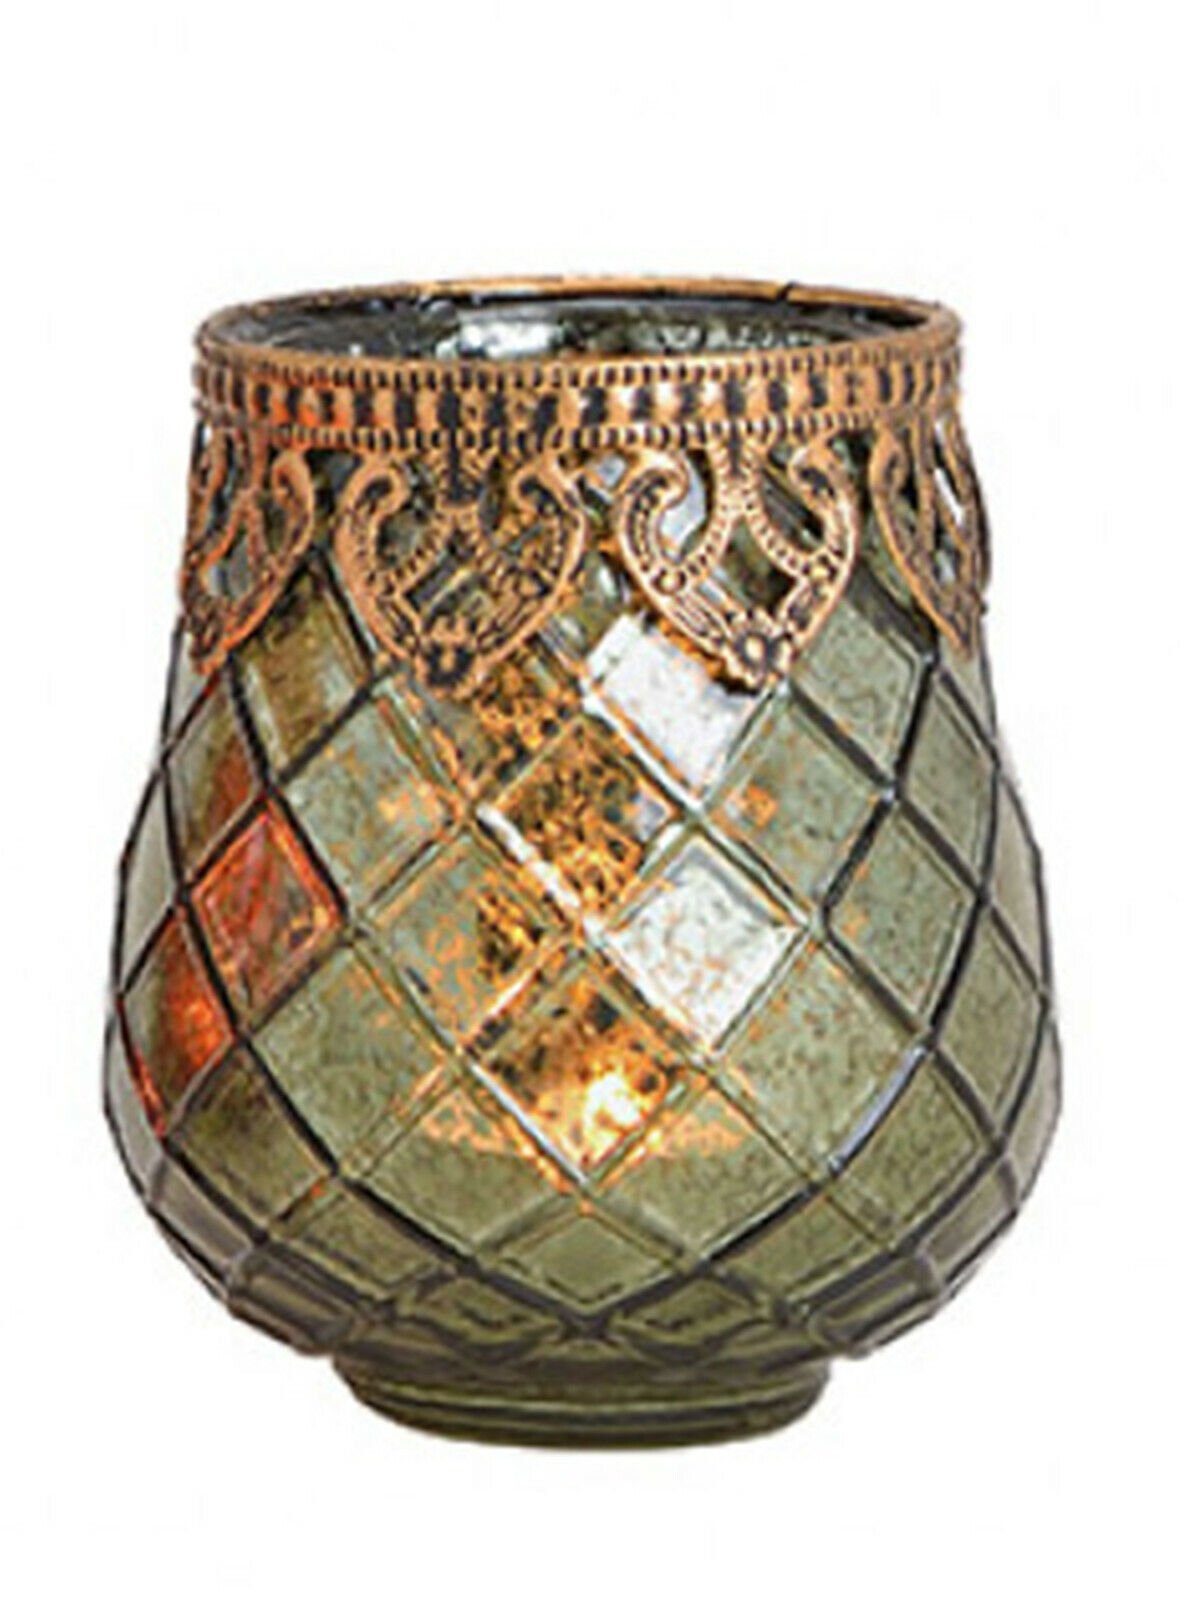 Taschen4life Windlicht Glas Windlicht Indien 602 (3 Stück) (3er Set), orientalische Windlichte, Teelichthalter, Shabby chic & Bohemien Stil 3 Stück grün